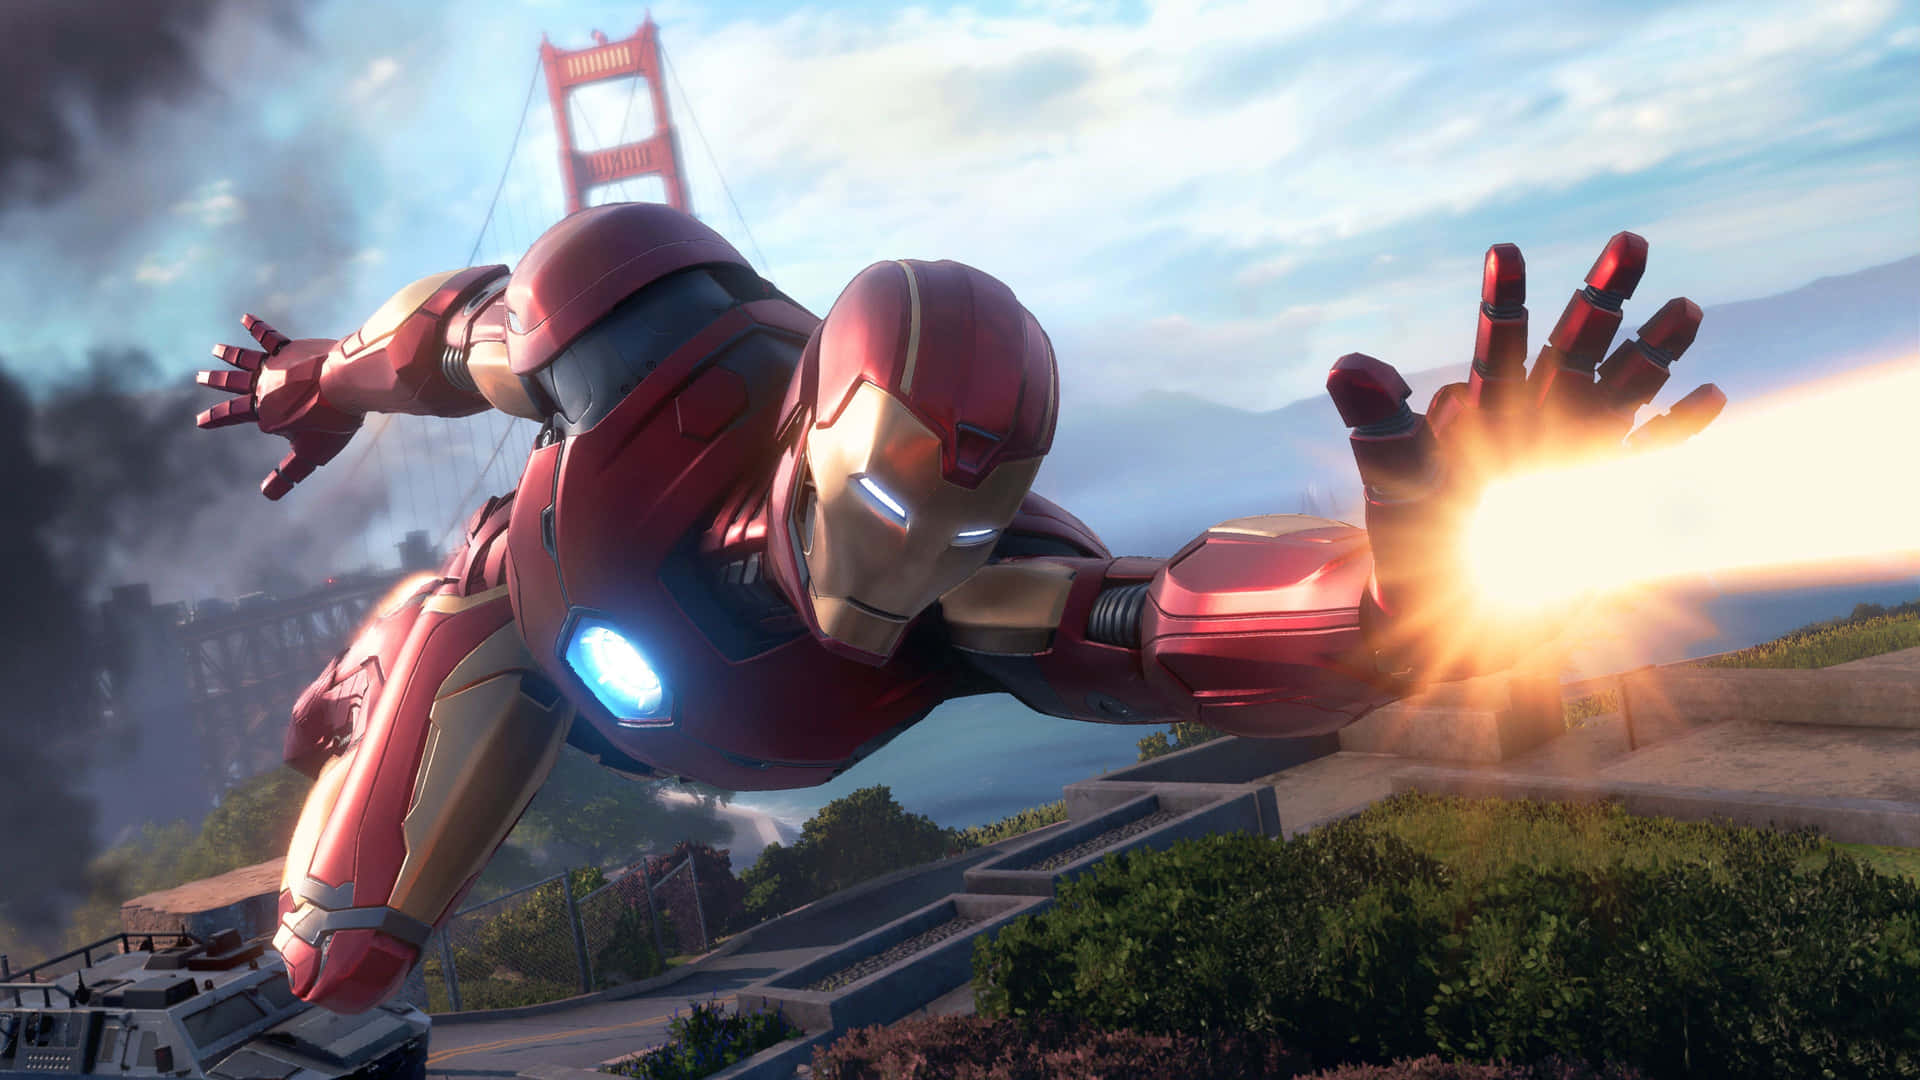 Elalter Ego De Tony Stark, Iron Man, Volando Alto, Listo Para Enfrentar Cualquier Desafío Que Se Presente. Fondo de pantalla